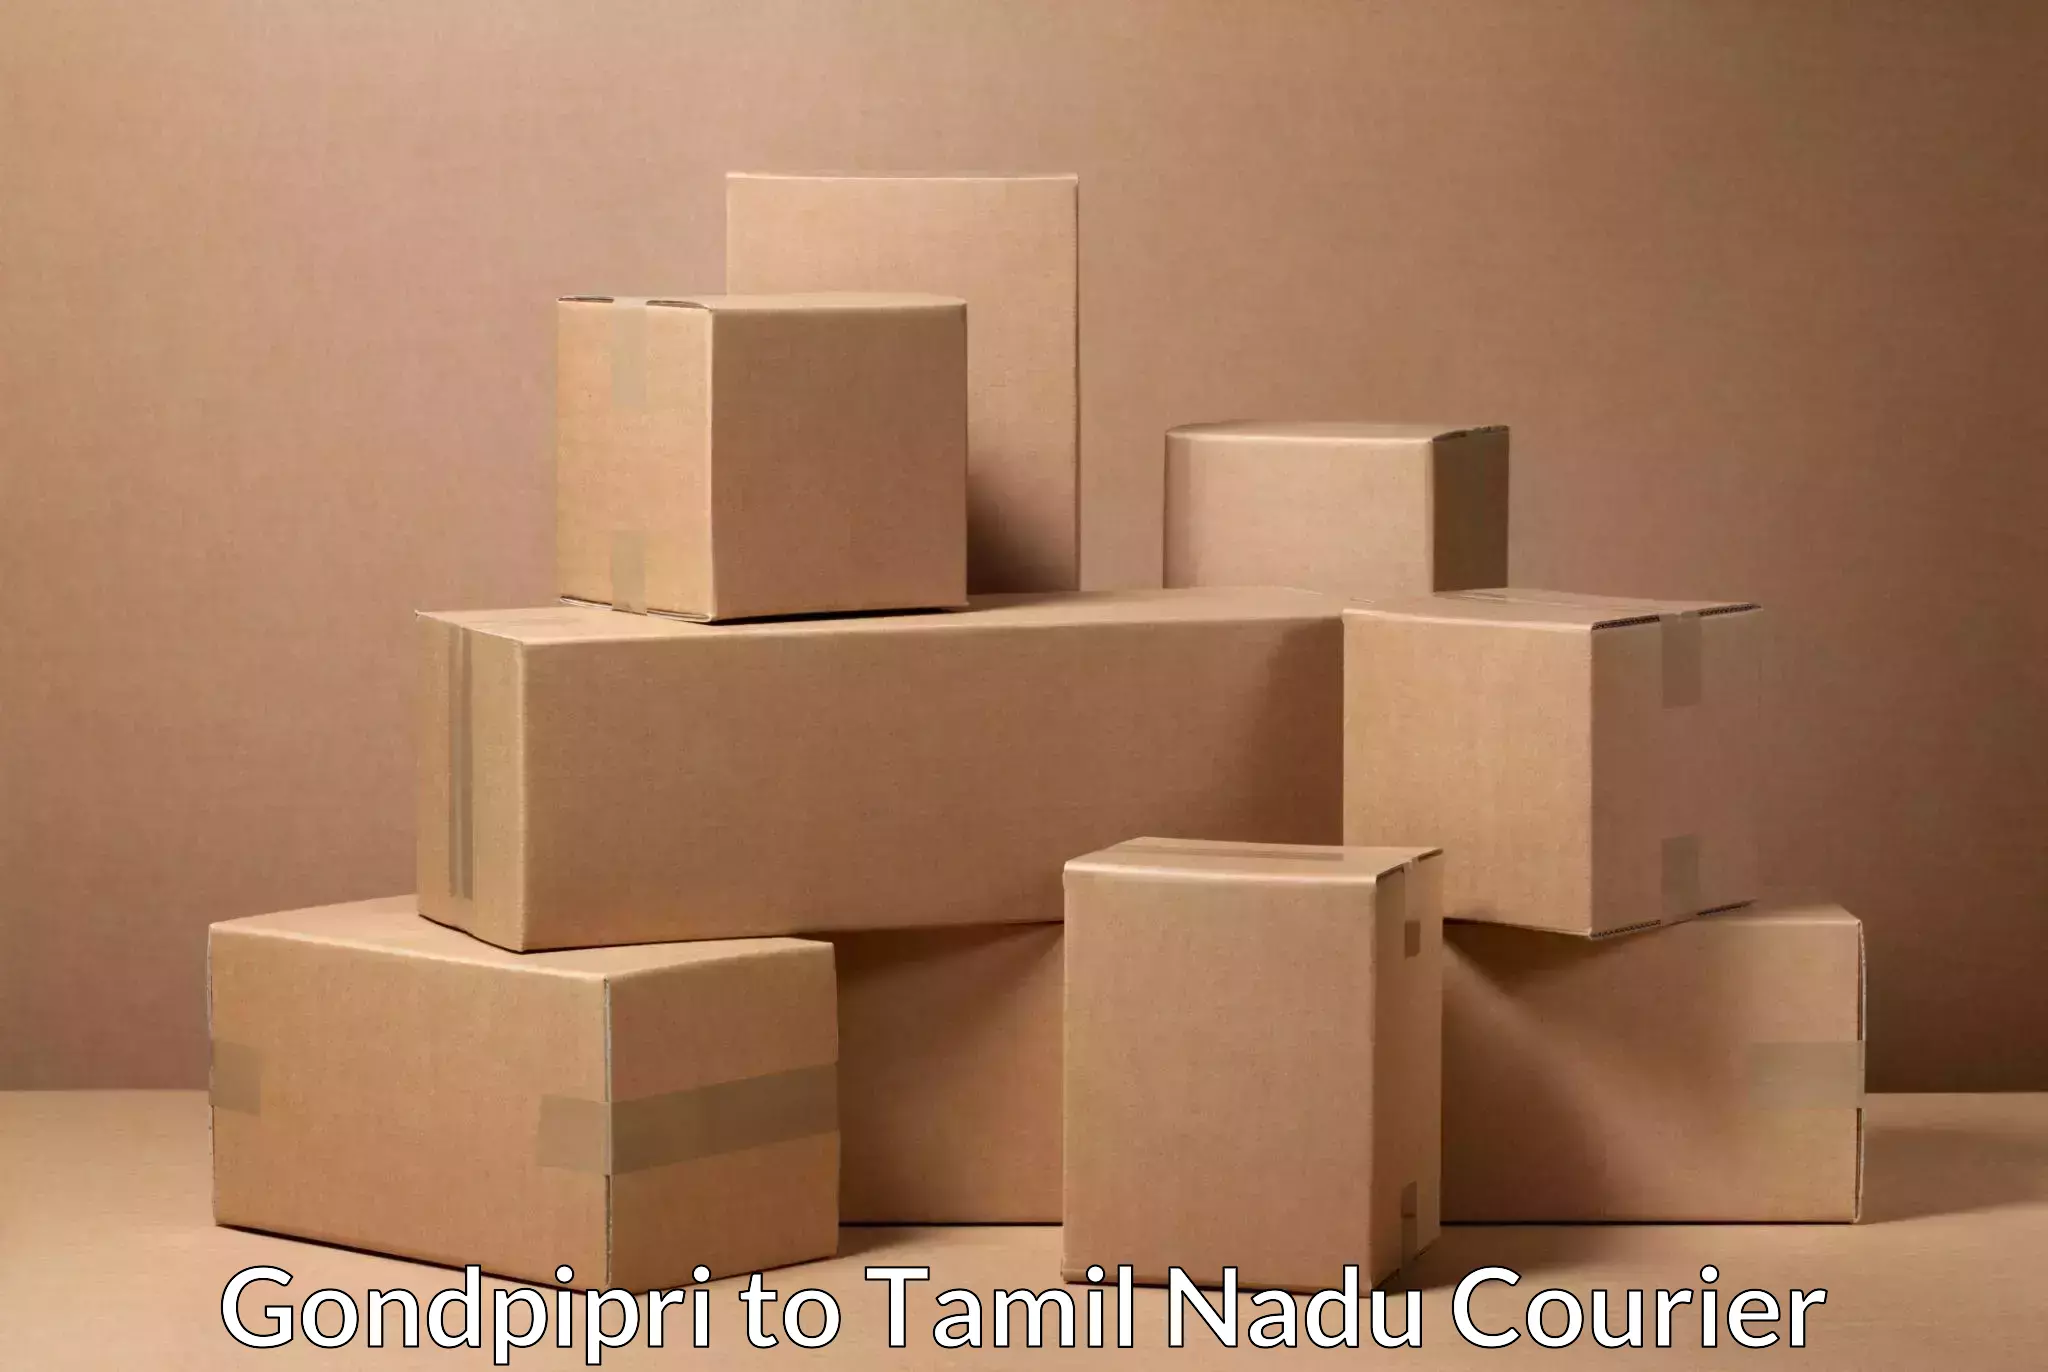 Efficient courier operations Gondpipri to Srirangam